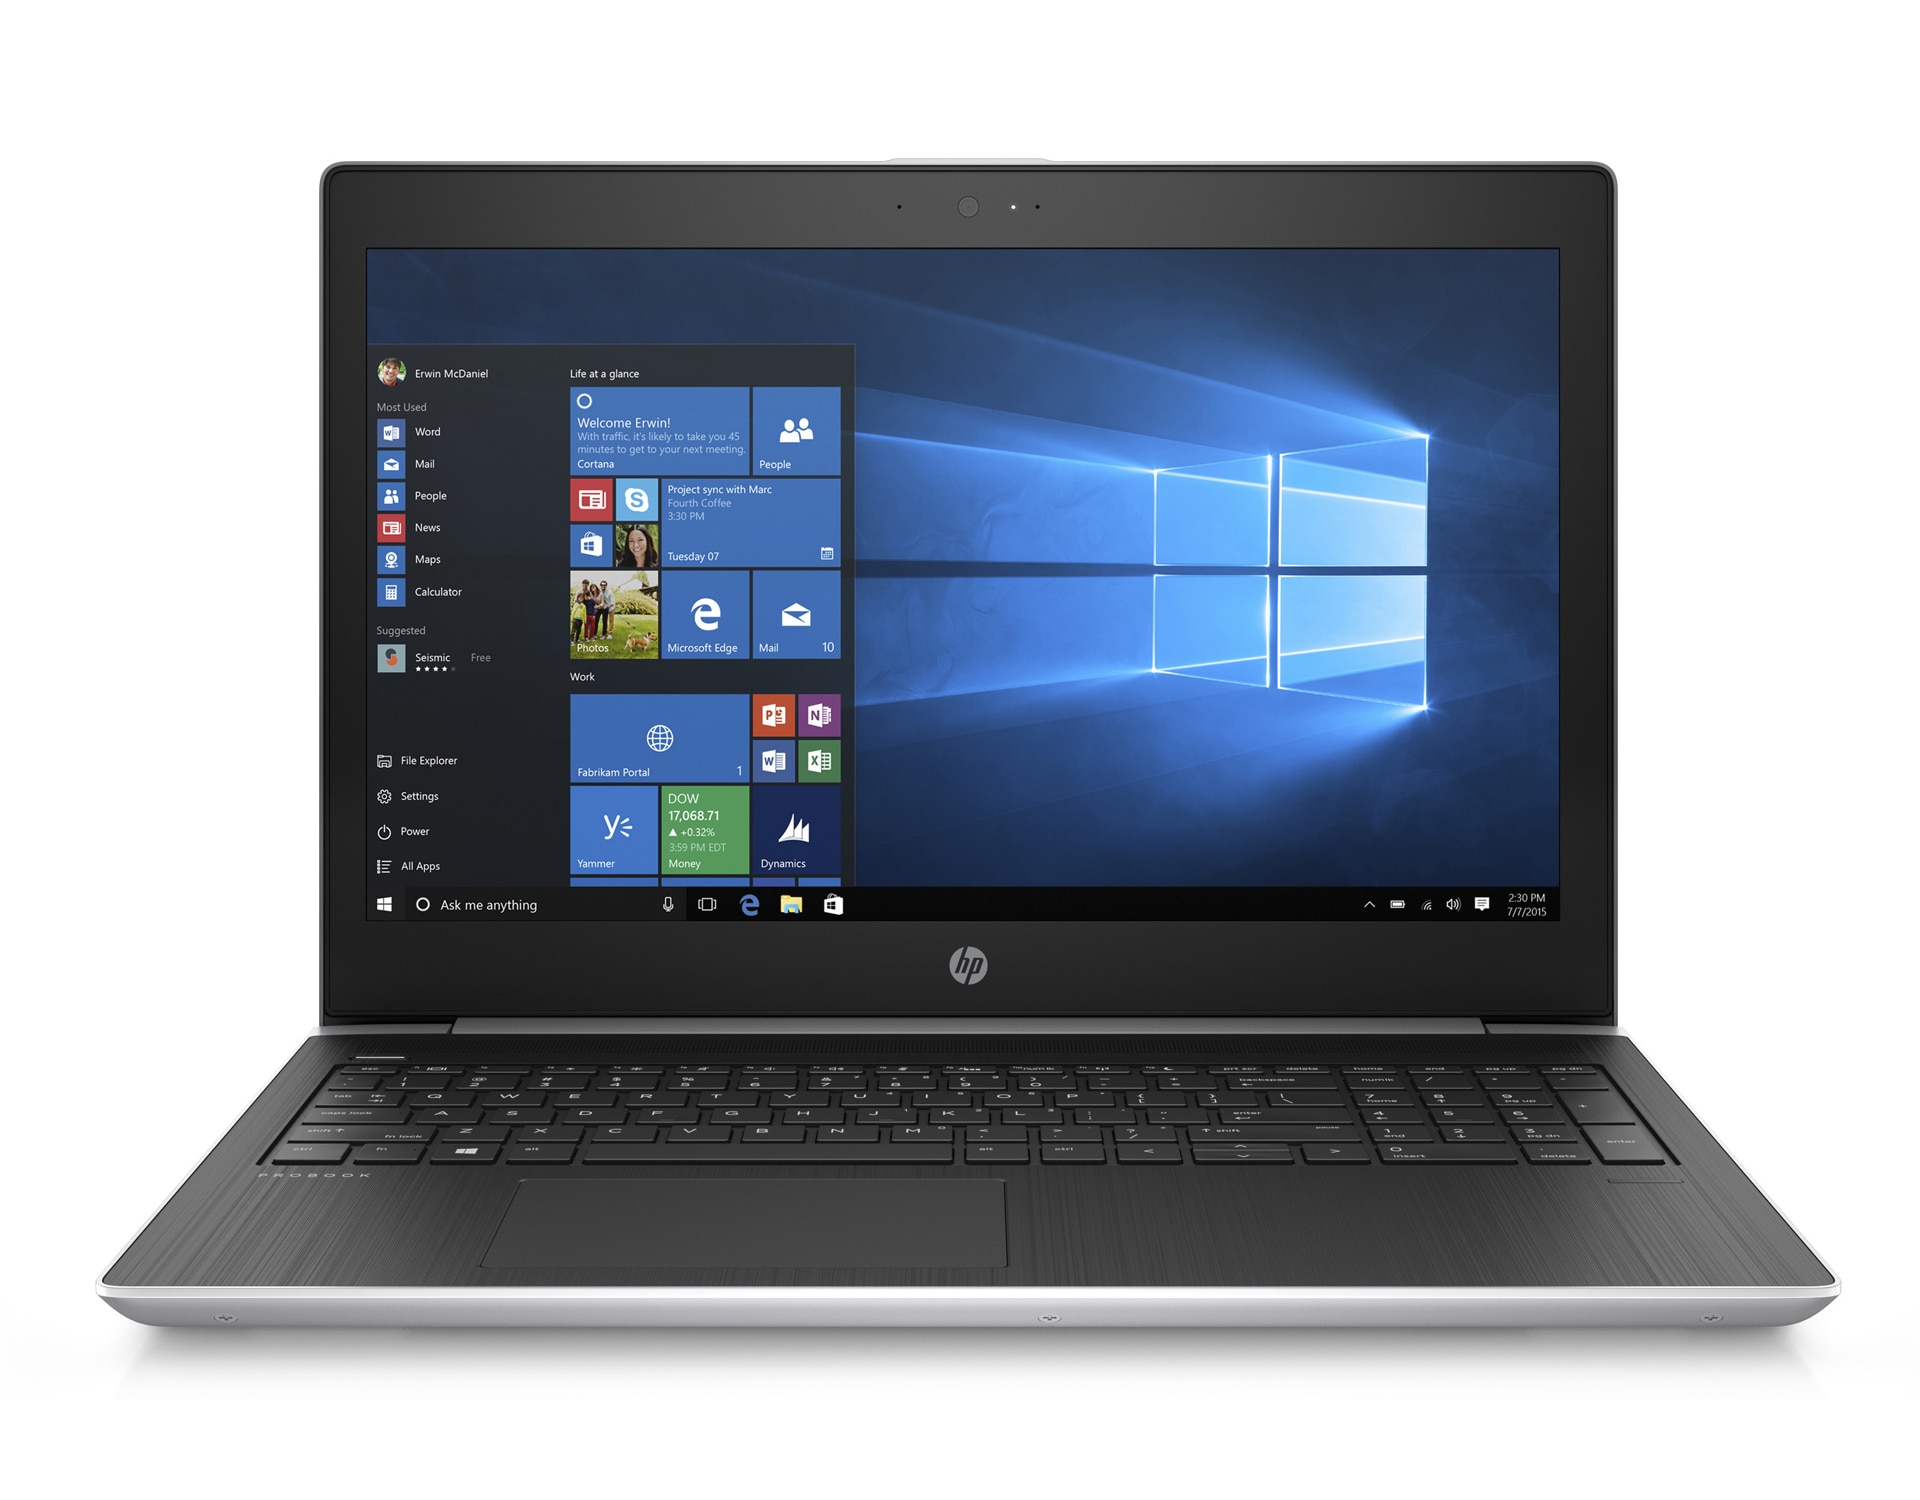 【大画面17.3インチ】 【高スペック】 HP ProBook 470 G5 第8世代 Core i7 7500U/2.70GHz 8GB SSD240GB M.2 Windows10 64bit WPSOffice 17.3インチ フルHD カメラ テンキー 無線LAN パソコン ノートパソコン PC Notebook